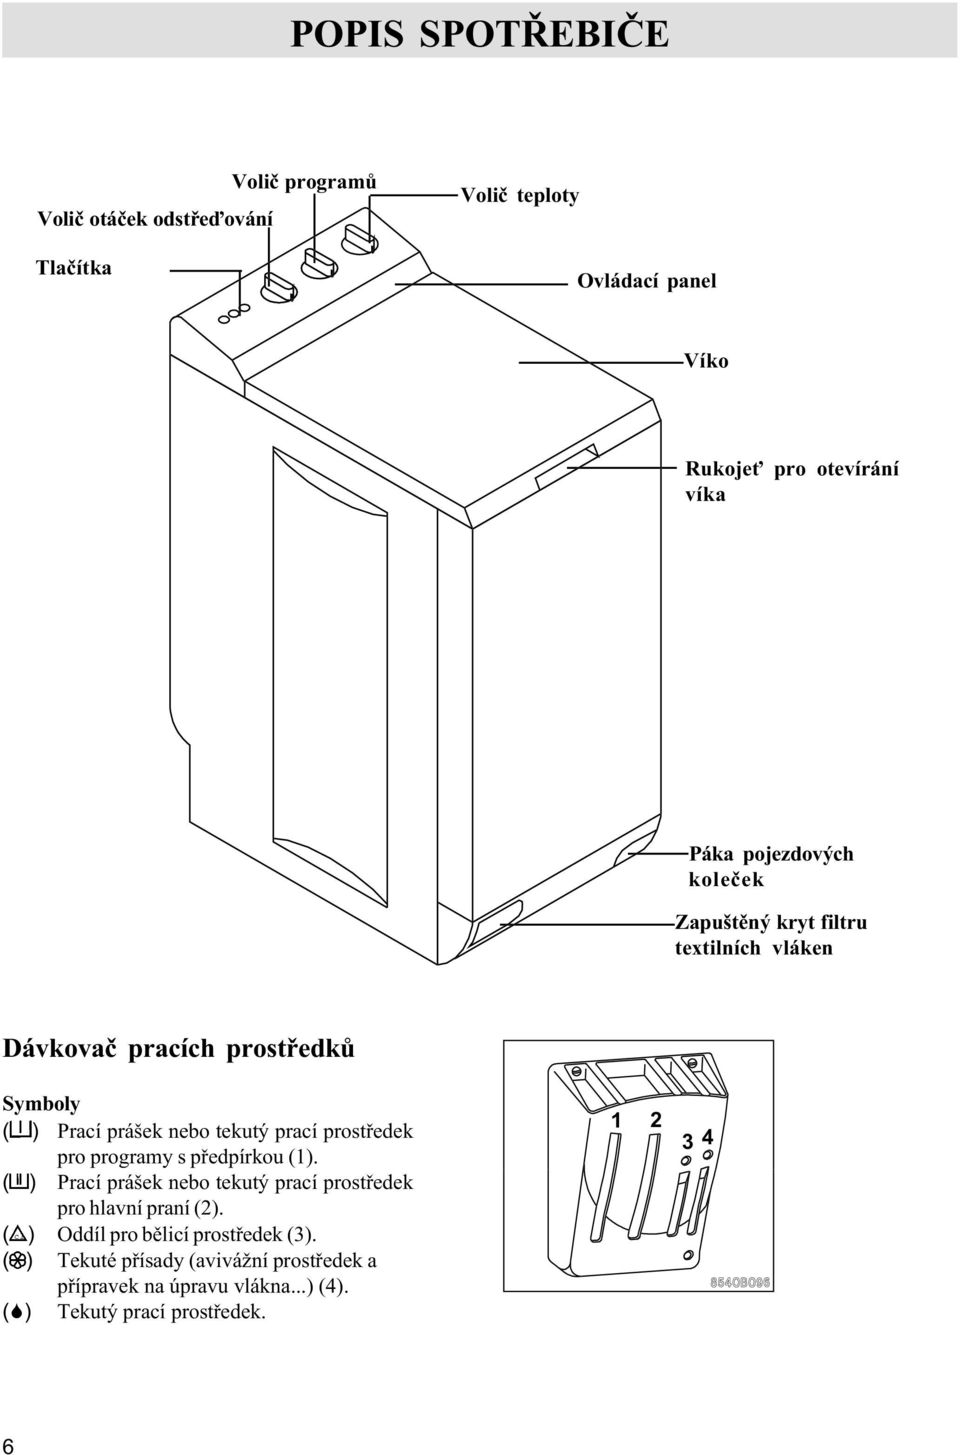 prostøedek pro programy s pøedpírkou (1). ( ) Prací prášek nebo tekutý prací prostøedek pro hlavní praní (2).